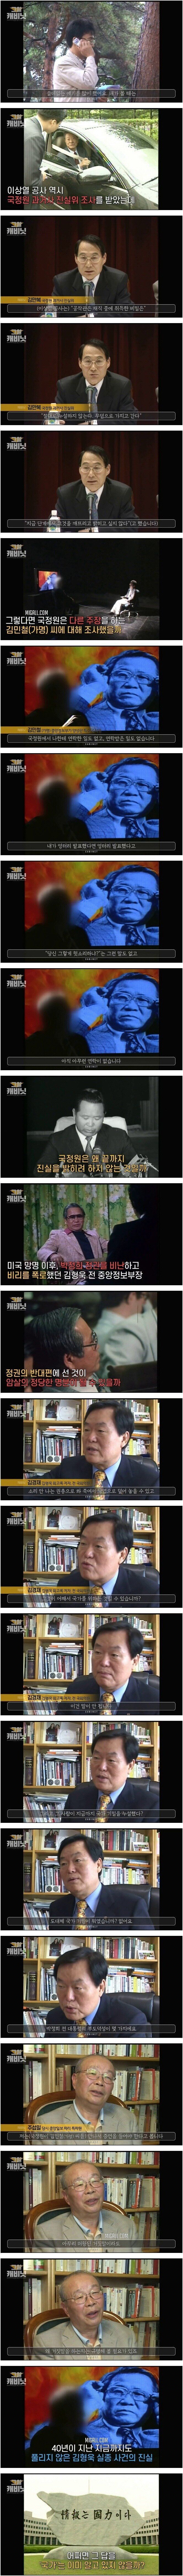 김형욱 전 중앙정보부장 납치 암살사건3.jpg